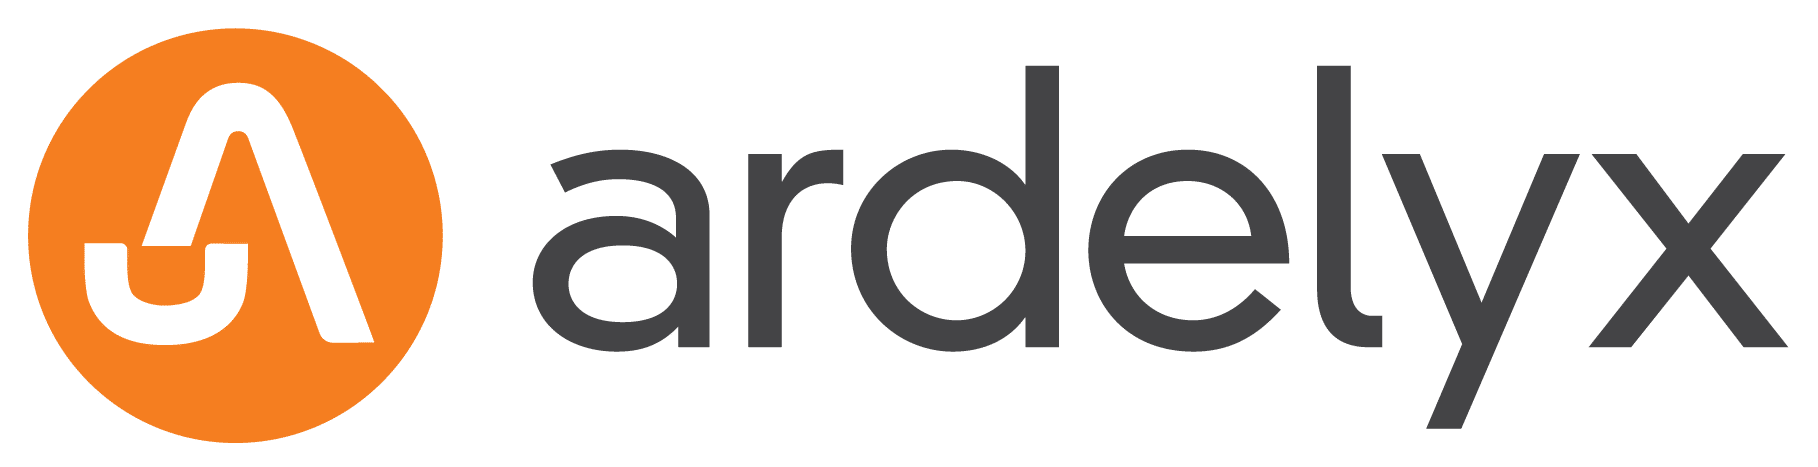 Ardelyx Logo